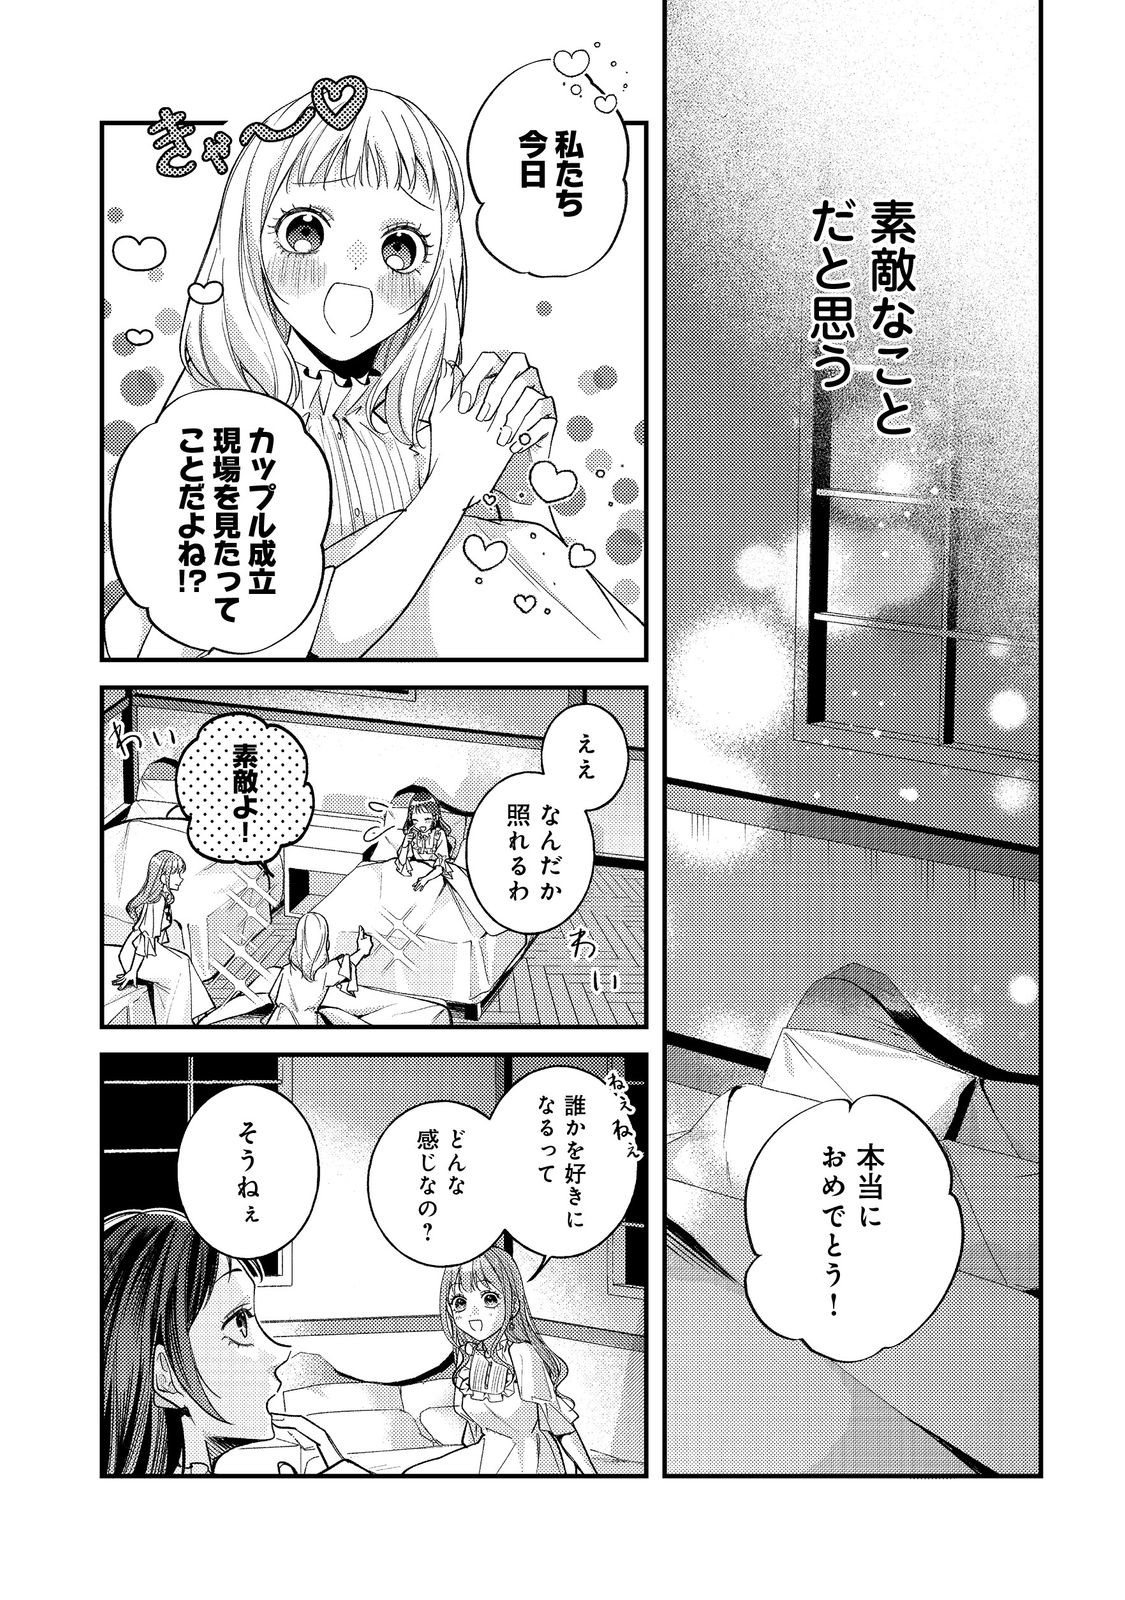 Bad End Mokuzen no Heroine ni Tensei shita Watashi, Konse de wa Renai suru Tsumori ga Cheat na Ani ga Hanashite kuremasen!? - Chapter 21 - Page 6